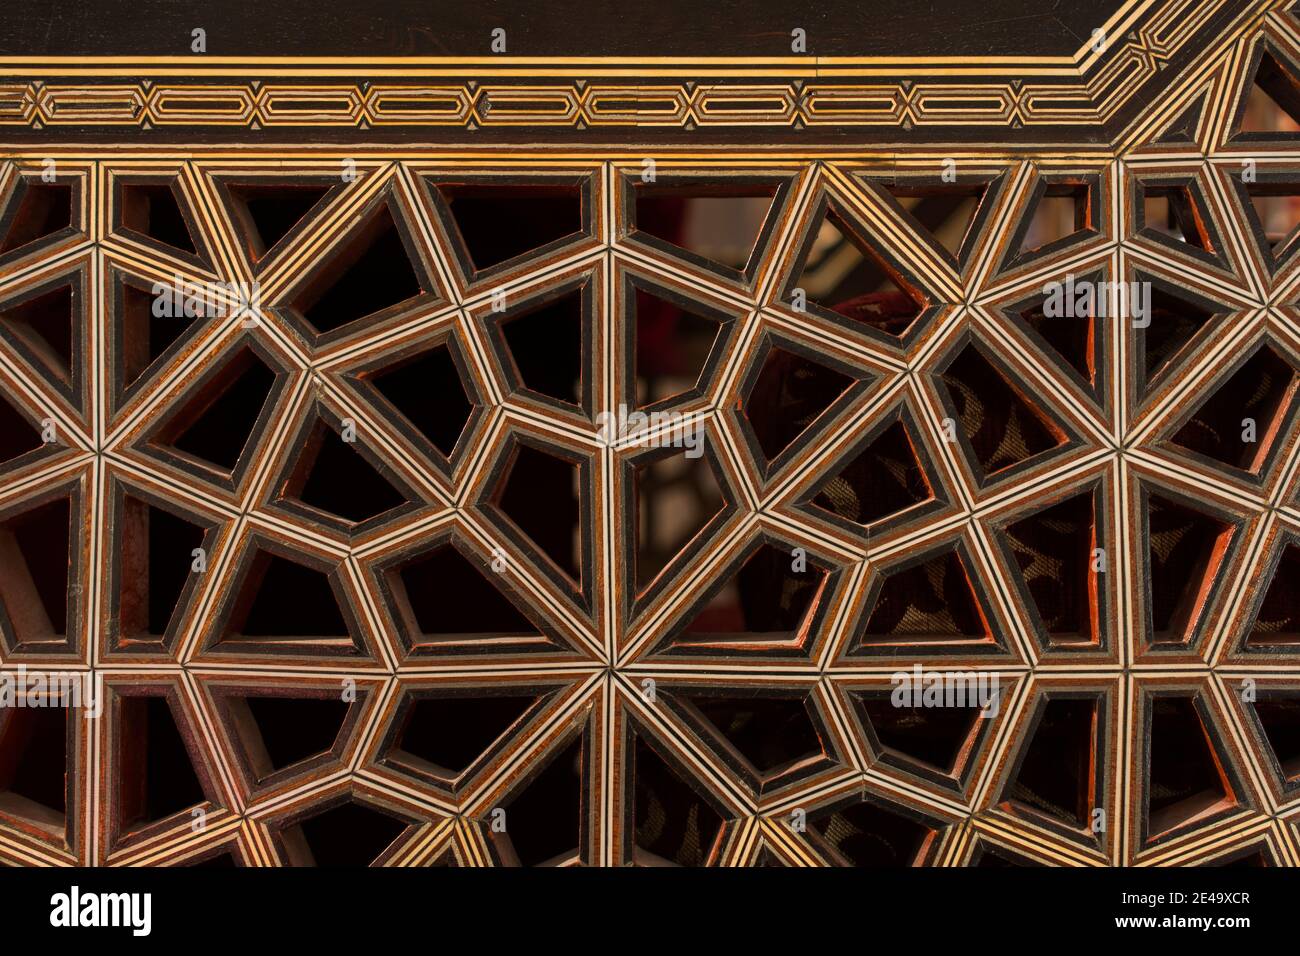 Art ottoman dans des motifs géométriques sur le bois Banque D'Images